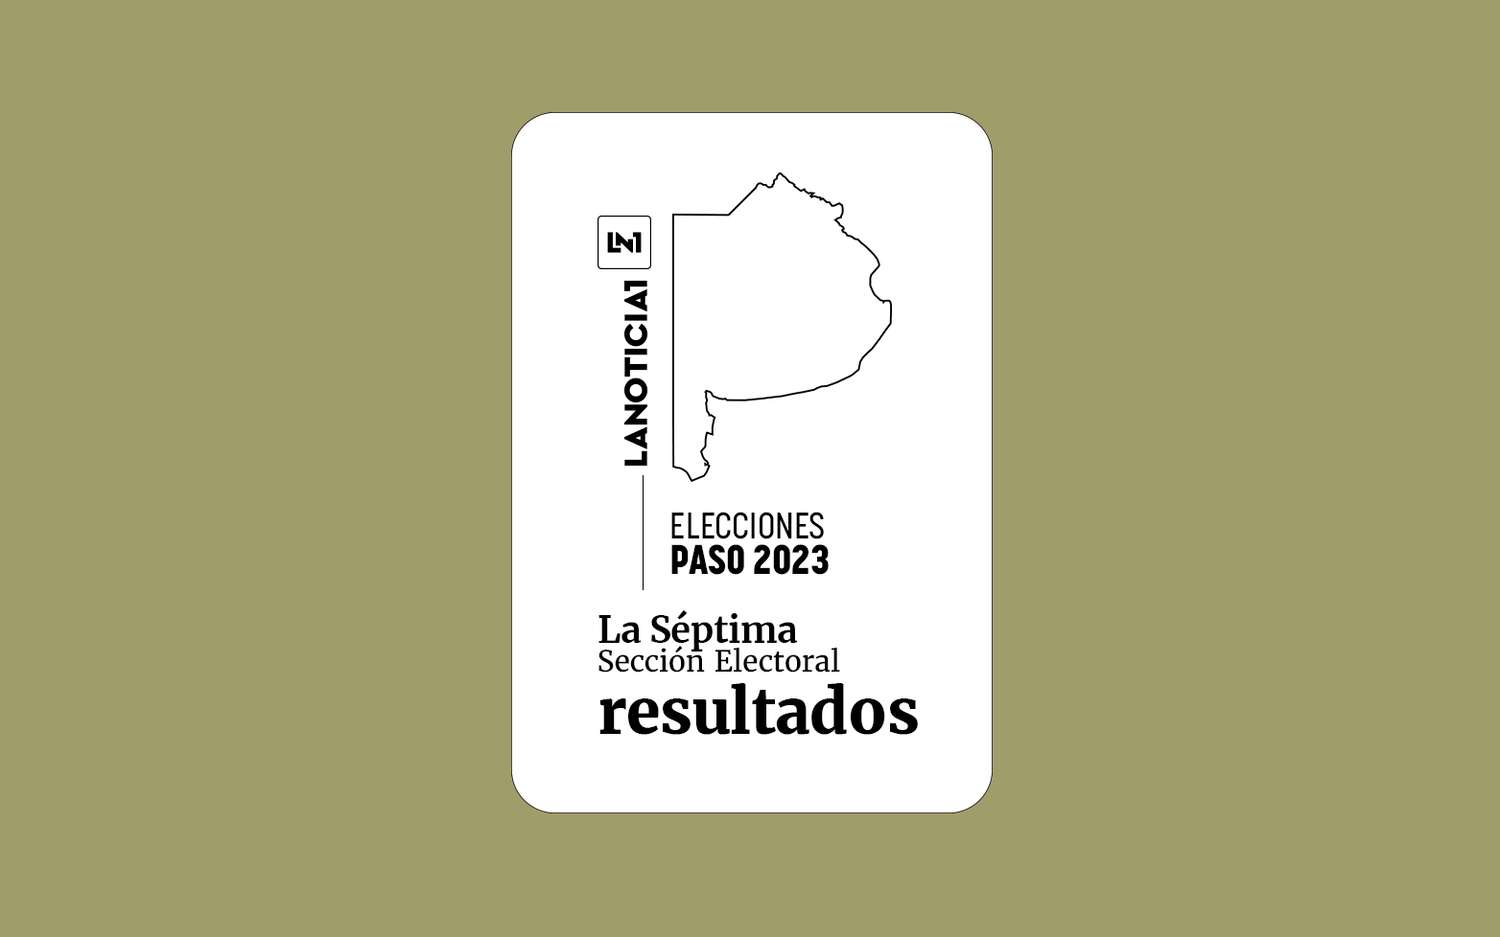 Elecciones PASO 2023: Resultados oficiales en la Séptima Sección Electoral